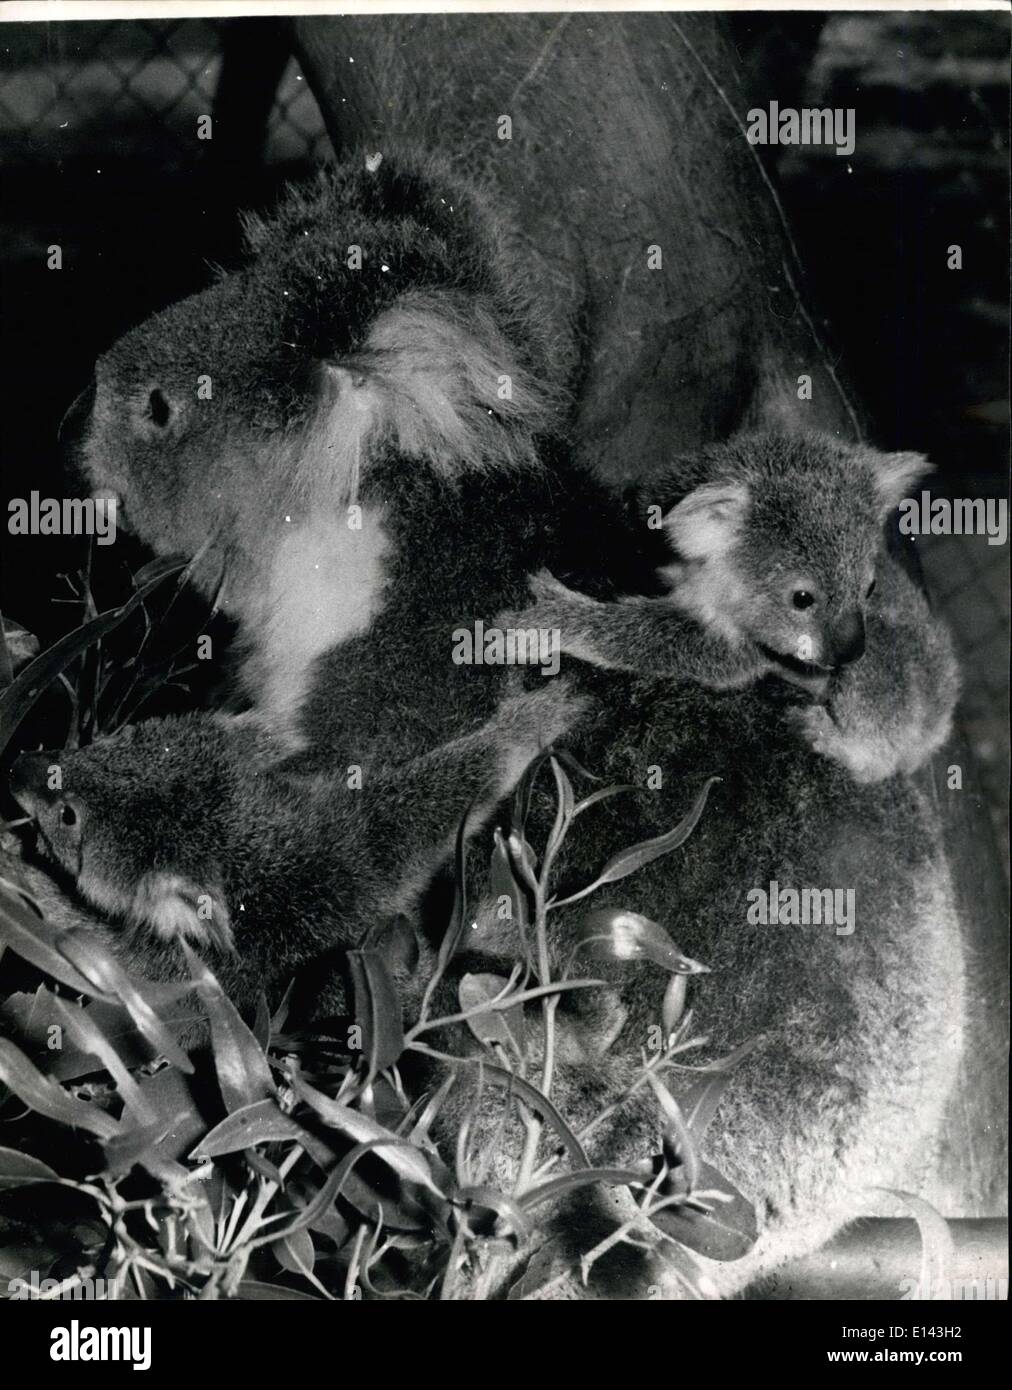 Marzo 31, 2012 - Rara gemelos, Koala en Australia: María, un niño de 8 años de edad Koala, visto mostrando su twin Koalas. Los gemelos, aún sin nombre, somos los primeros en haber nacido en la Reserva del Parque Nacional Yanchep, a unas 40 millas al norte de Perth y se considera una rareza en Australia. María, que también nació en Yanchep, ha tenido dos bebés Koala anterior. Los gemelos son 9 meses de edad y salió de su bolsa de la madre por primera vez la semana pasada. La reserva del Parque Nacional Yanchep superintendente Sr. John Dale dijo: ''uno era reacio a salir de su madre la bolsa Foto de stock